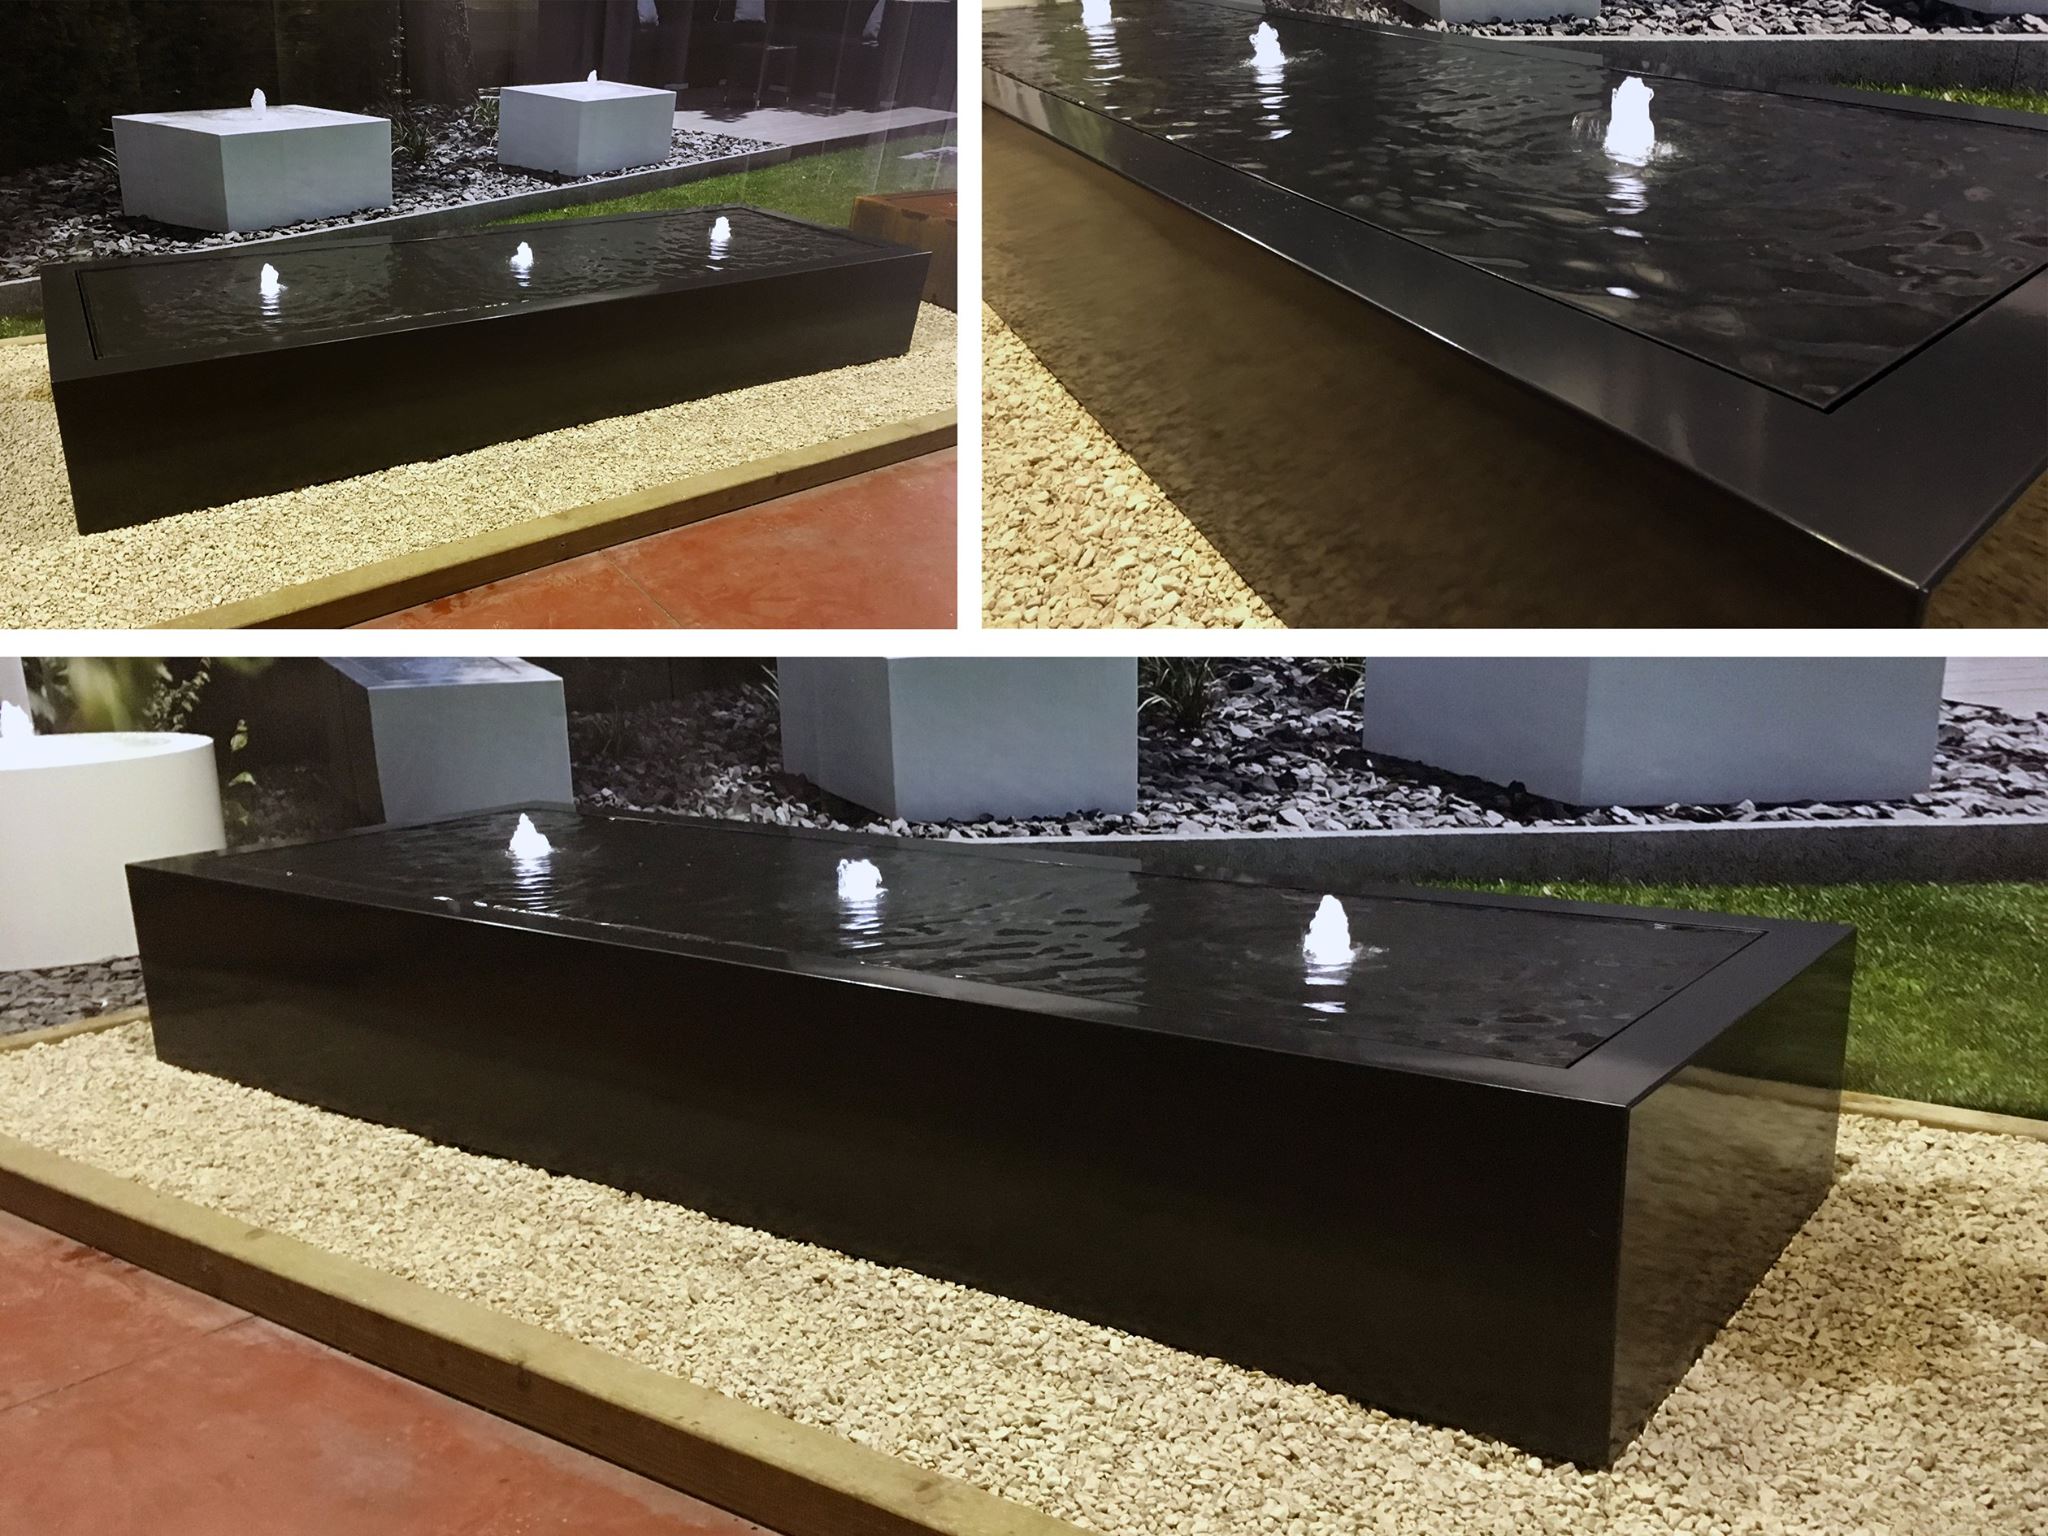 Bekijk onze zwarte aluminium Corux watertafel van 300 x 100 x 40 cm in ons atelier.